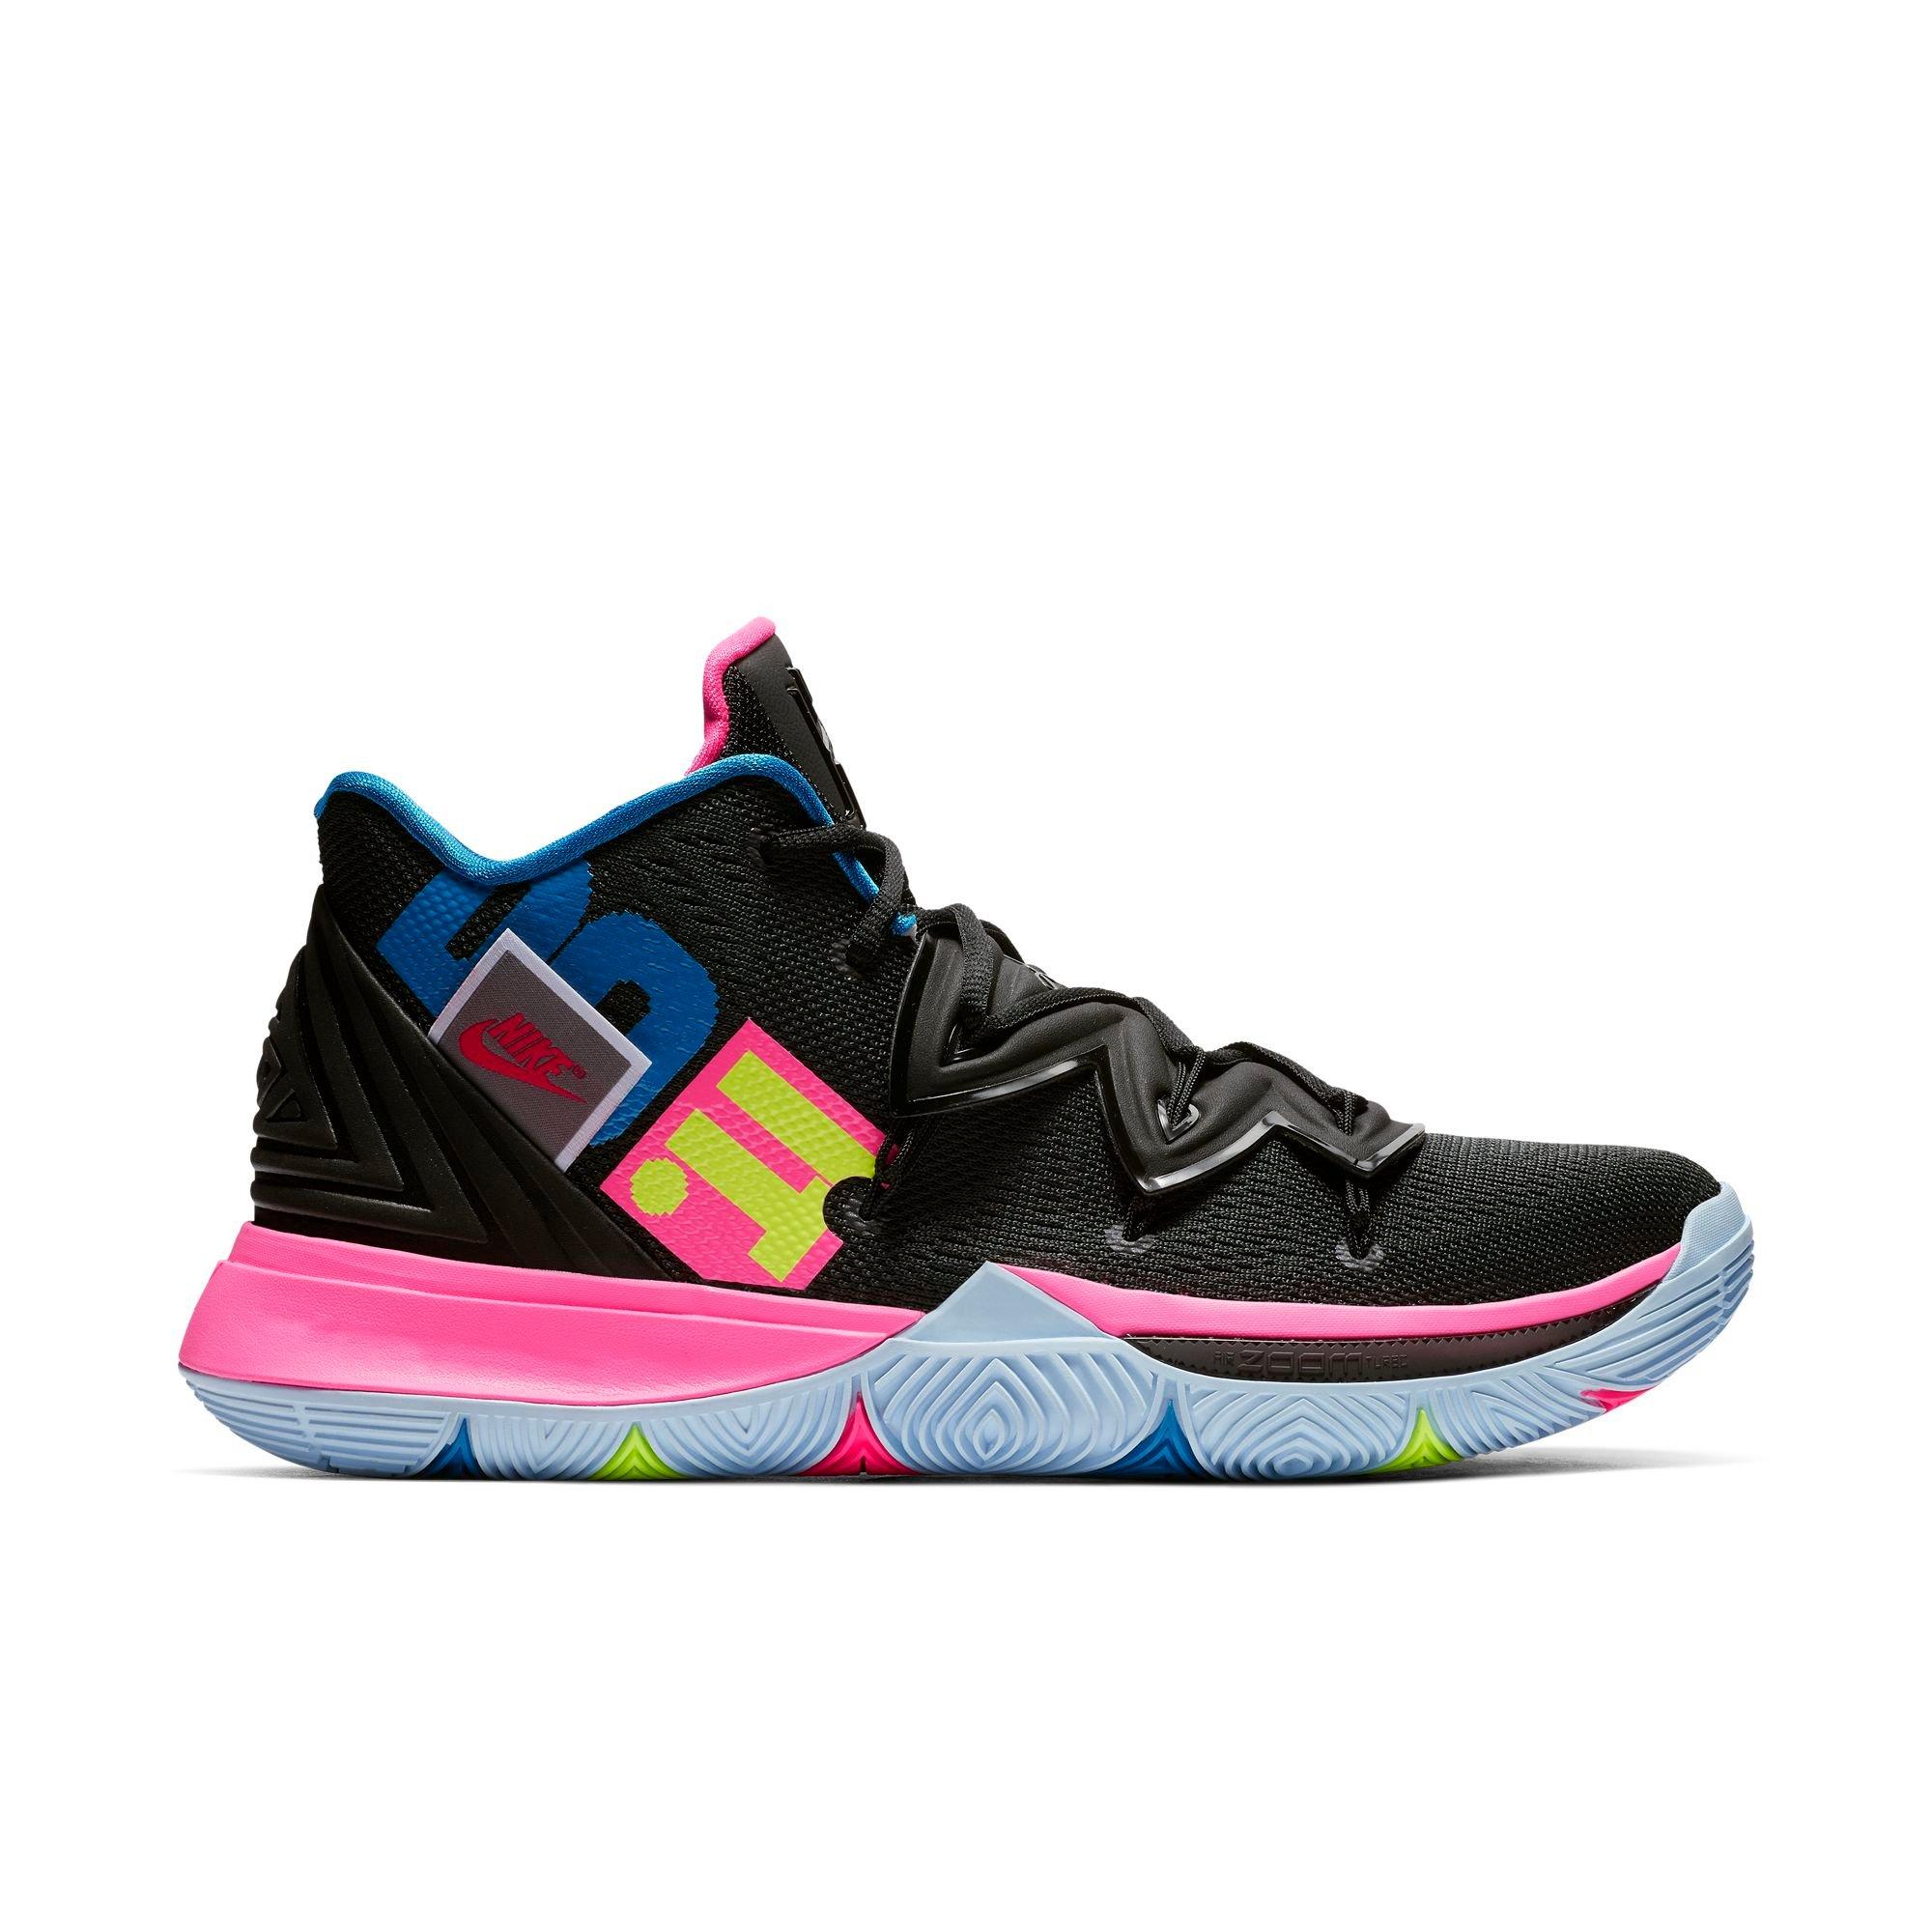 Basket sick sneakers Nike Kyrie 5 EP 'Neon Rainbow